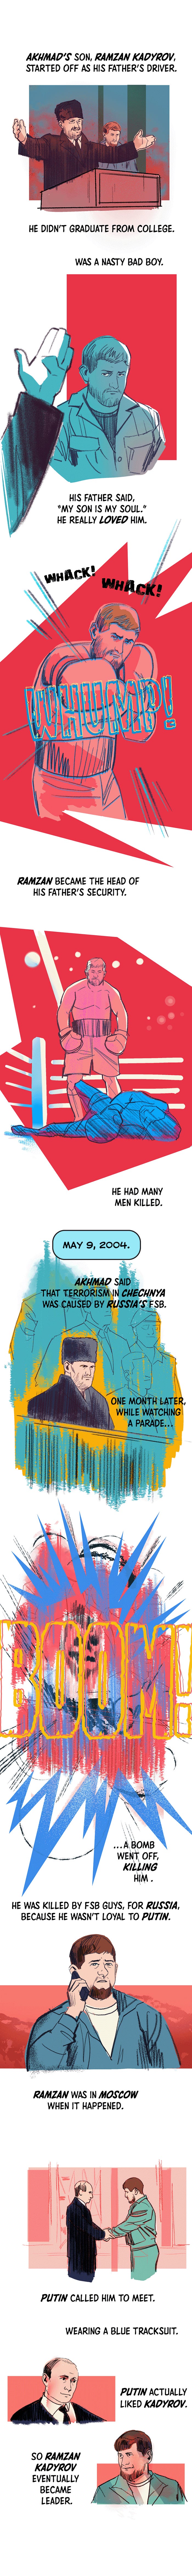 Achmads Sohn Ramsan Kadyrow war zunächst der Fahrer seines Vaters.  Er hat das College nicht abgeschlossen.  War ein böser böser Junge.  Sein Vater sagte: „Mein Sohn ist meine Seele.“  Er hat ihn wirklich geliebt.  Ramzan wurde der Sicherheitschef seines Vaters.  Er ließ viele Männer töten.  9. Mai 2004. Achmad sagte, der Terrorismus in Tschetschenien sei vom russischen FSB verursacht worden.  Einen Monat später, als er sich eine Parade ansah, explodierte eine Bombe, die ihn tötete.  Er wurde von FSB-Leuten für Russland getötet, weil er Putin gegenüber nicht loyal war.  Ramsan war in Moskau, als es passierte.  Putin rief ihn zu einem Treffen an.  Trägt einen blauen Trainingsanzug.  Putin mochte Kadyrow tatsächlich.  So wurde Ramsan Kadyrow schließlich zum Anführer.